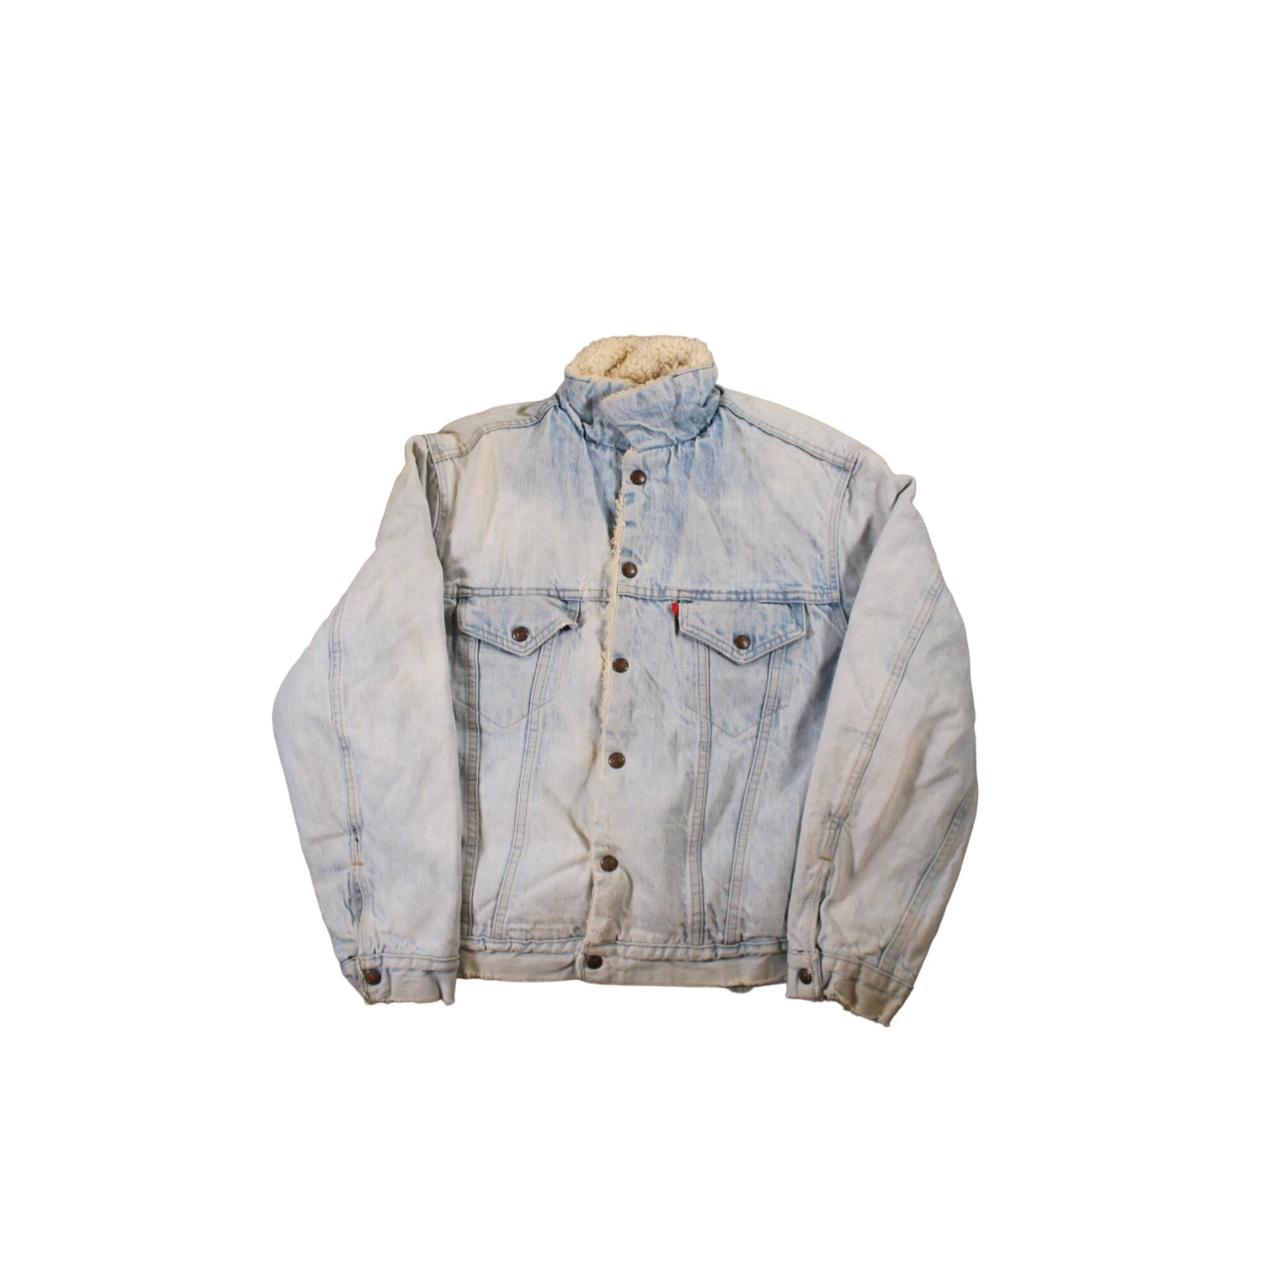 True Vintage Levi's Sherpa Lined Denim Jacket The... - Depop